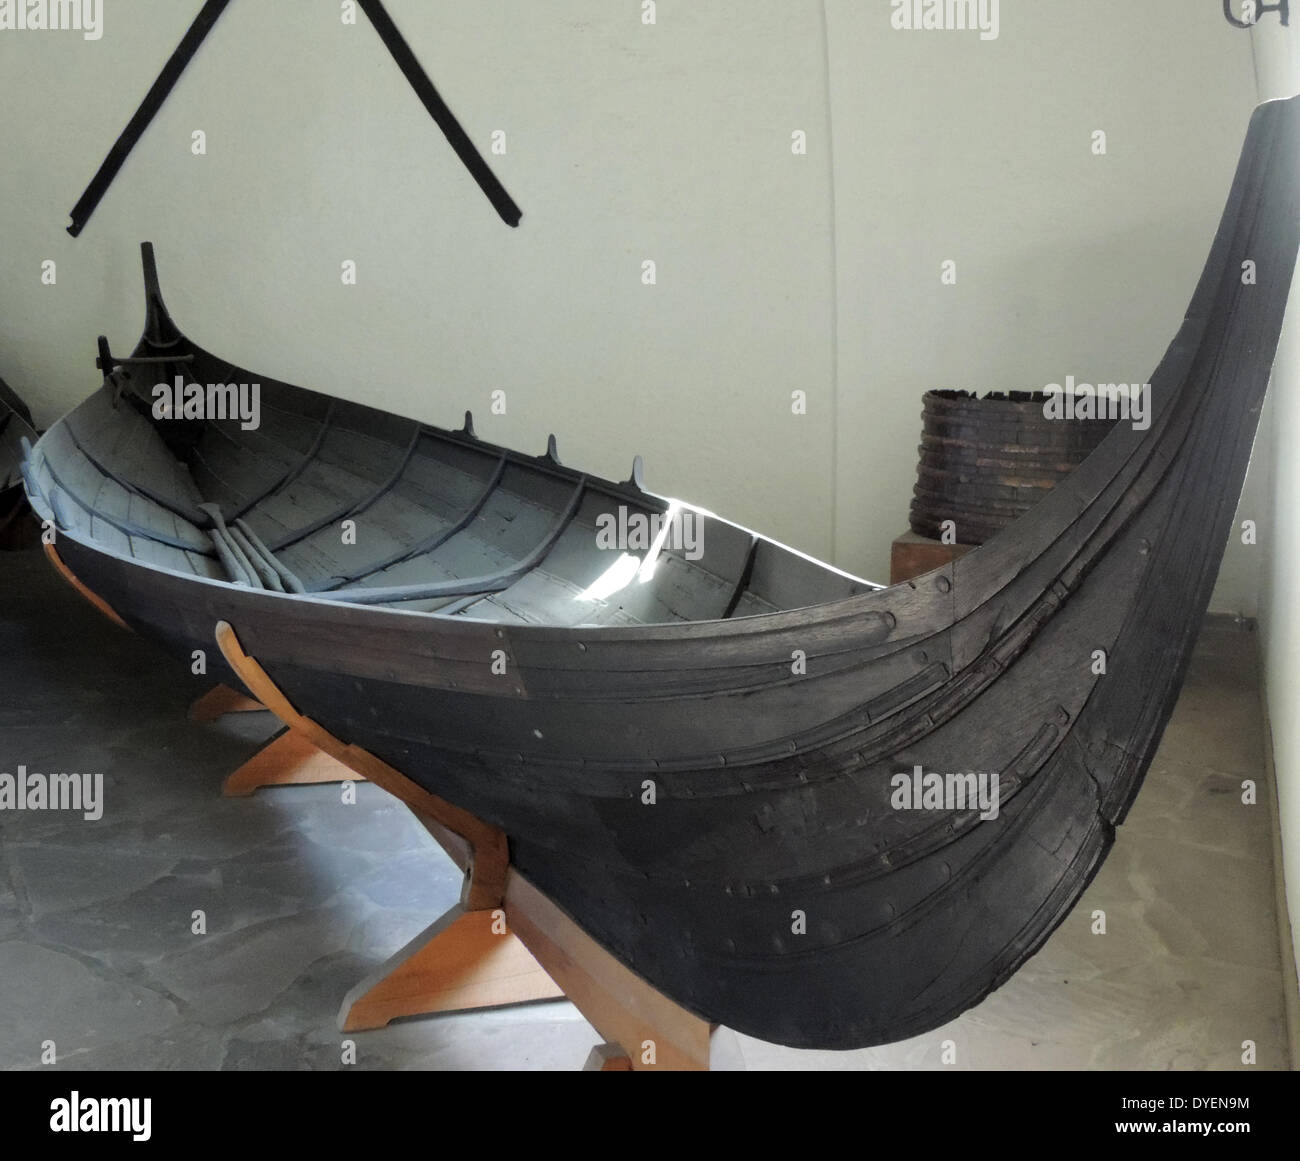 Petit bateau en bois, appelé petit bateau de Gokstad, trouvés dans le navire de Gokstad. Datant d'environ 850 AD, le navire a été fouillé en 1880. Le navire s'affiche à la Viking Ship Museum, à Bygdøy. Banque D'Images